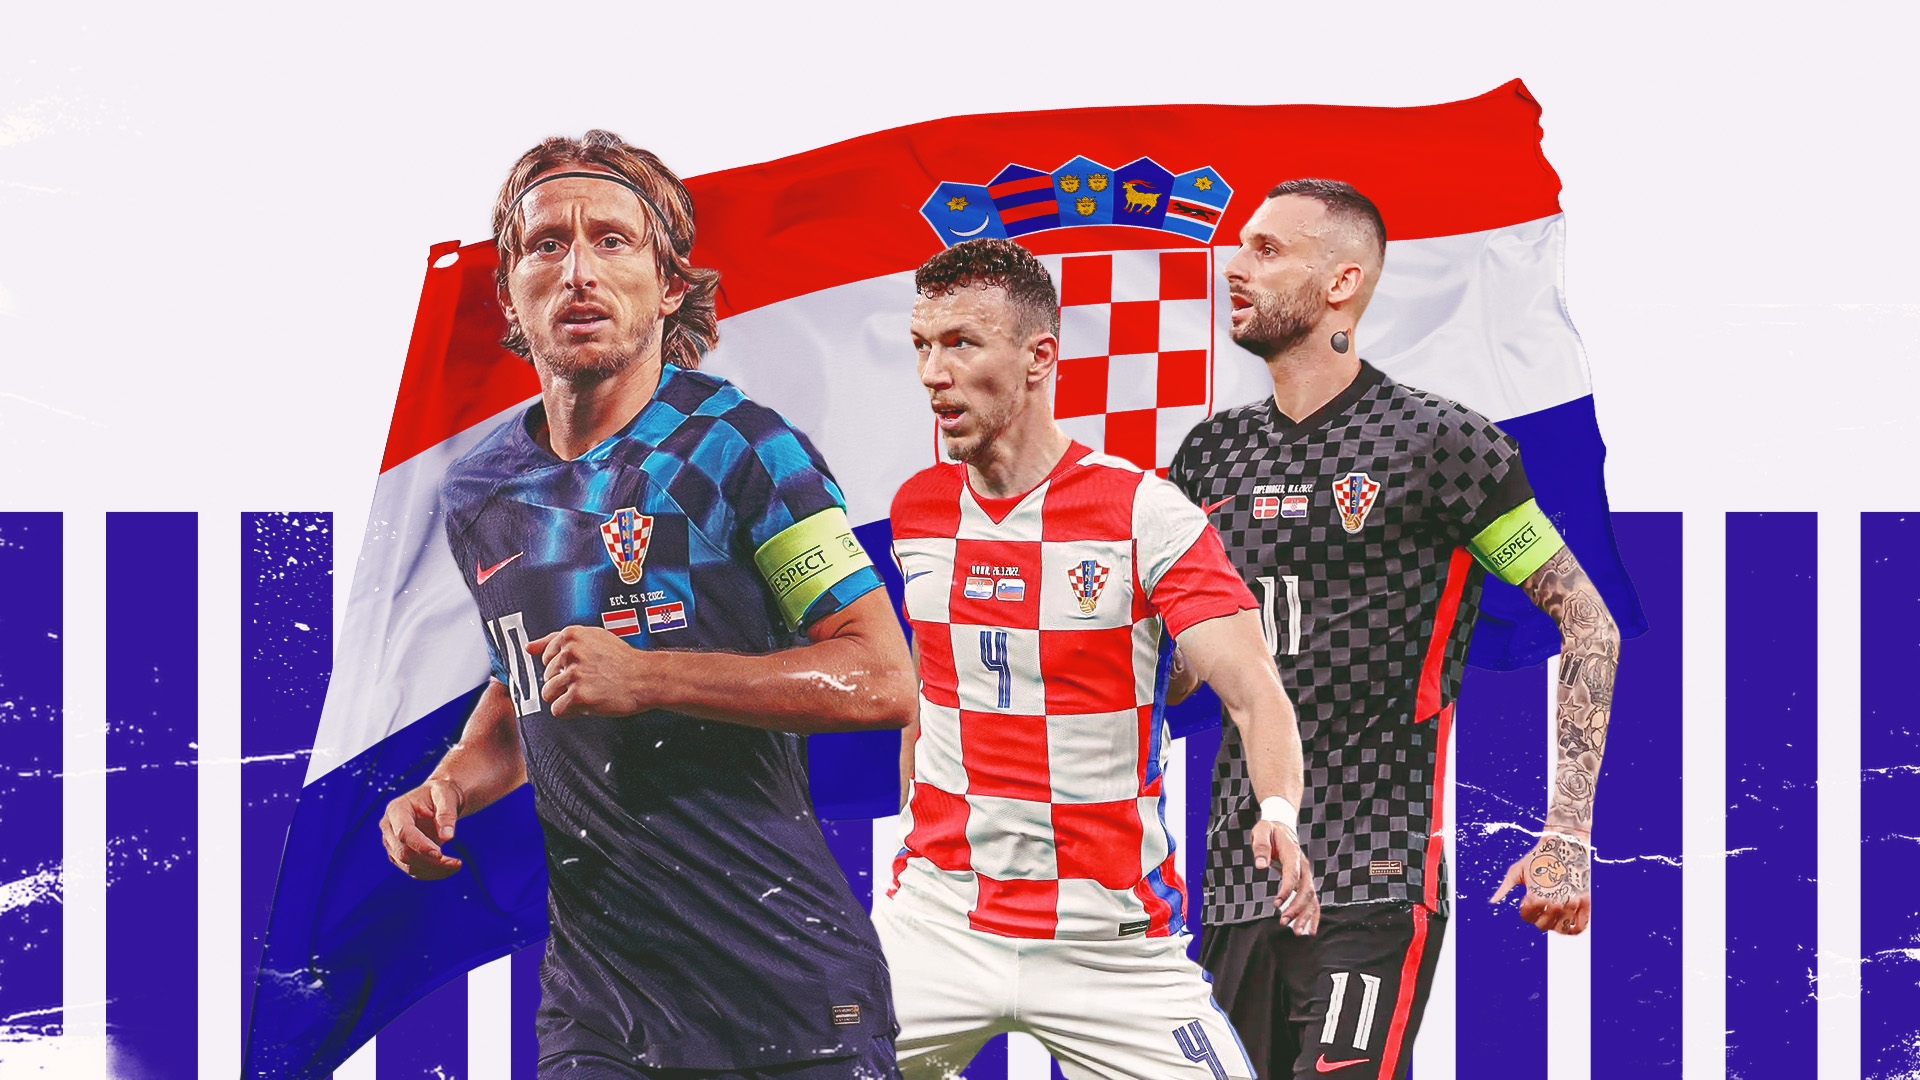 Đội tuyển bóng đá Croatia trong trang phục thi đấu quen thuộc